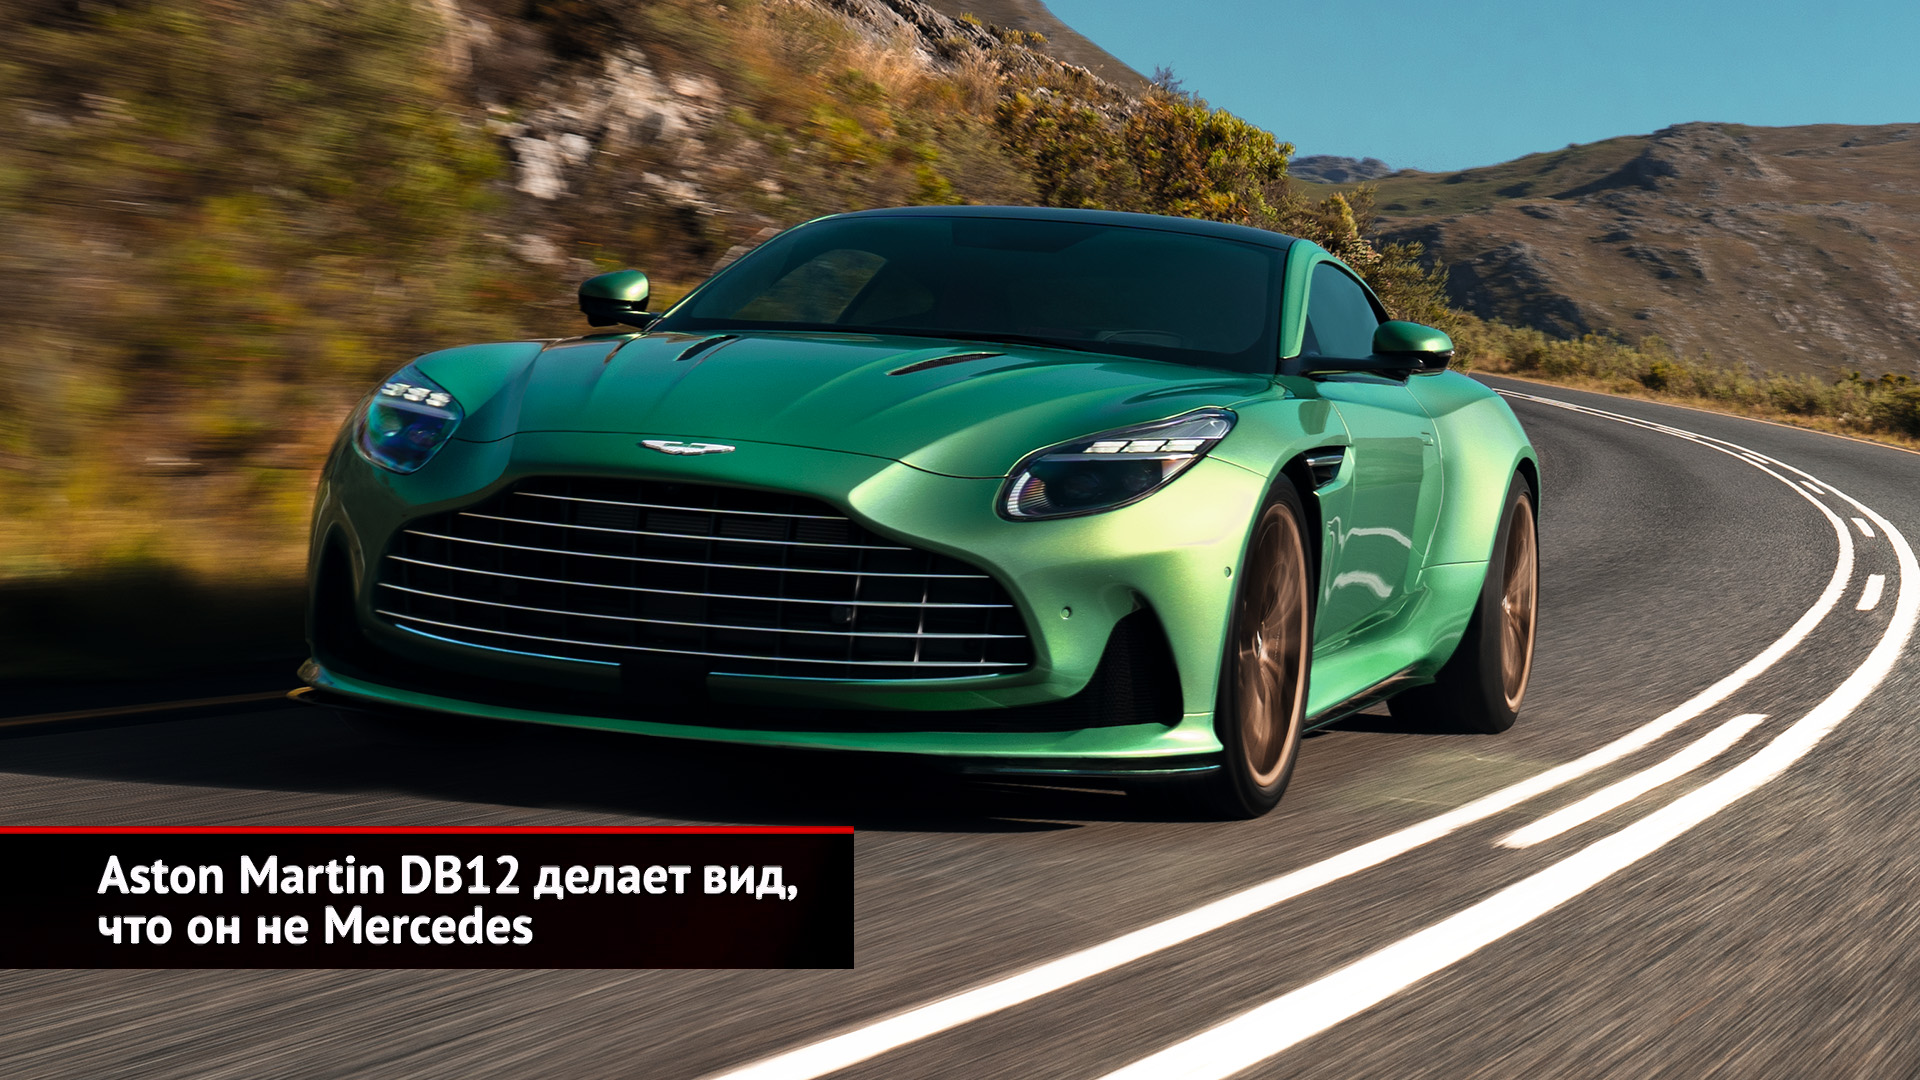 Aston Martin DB12 делает вид, что он не Mercedes | Новости с колёс №2517